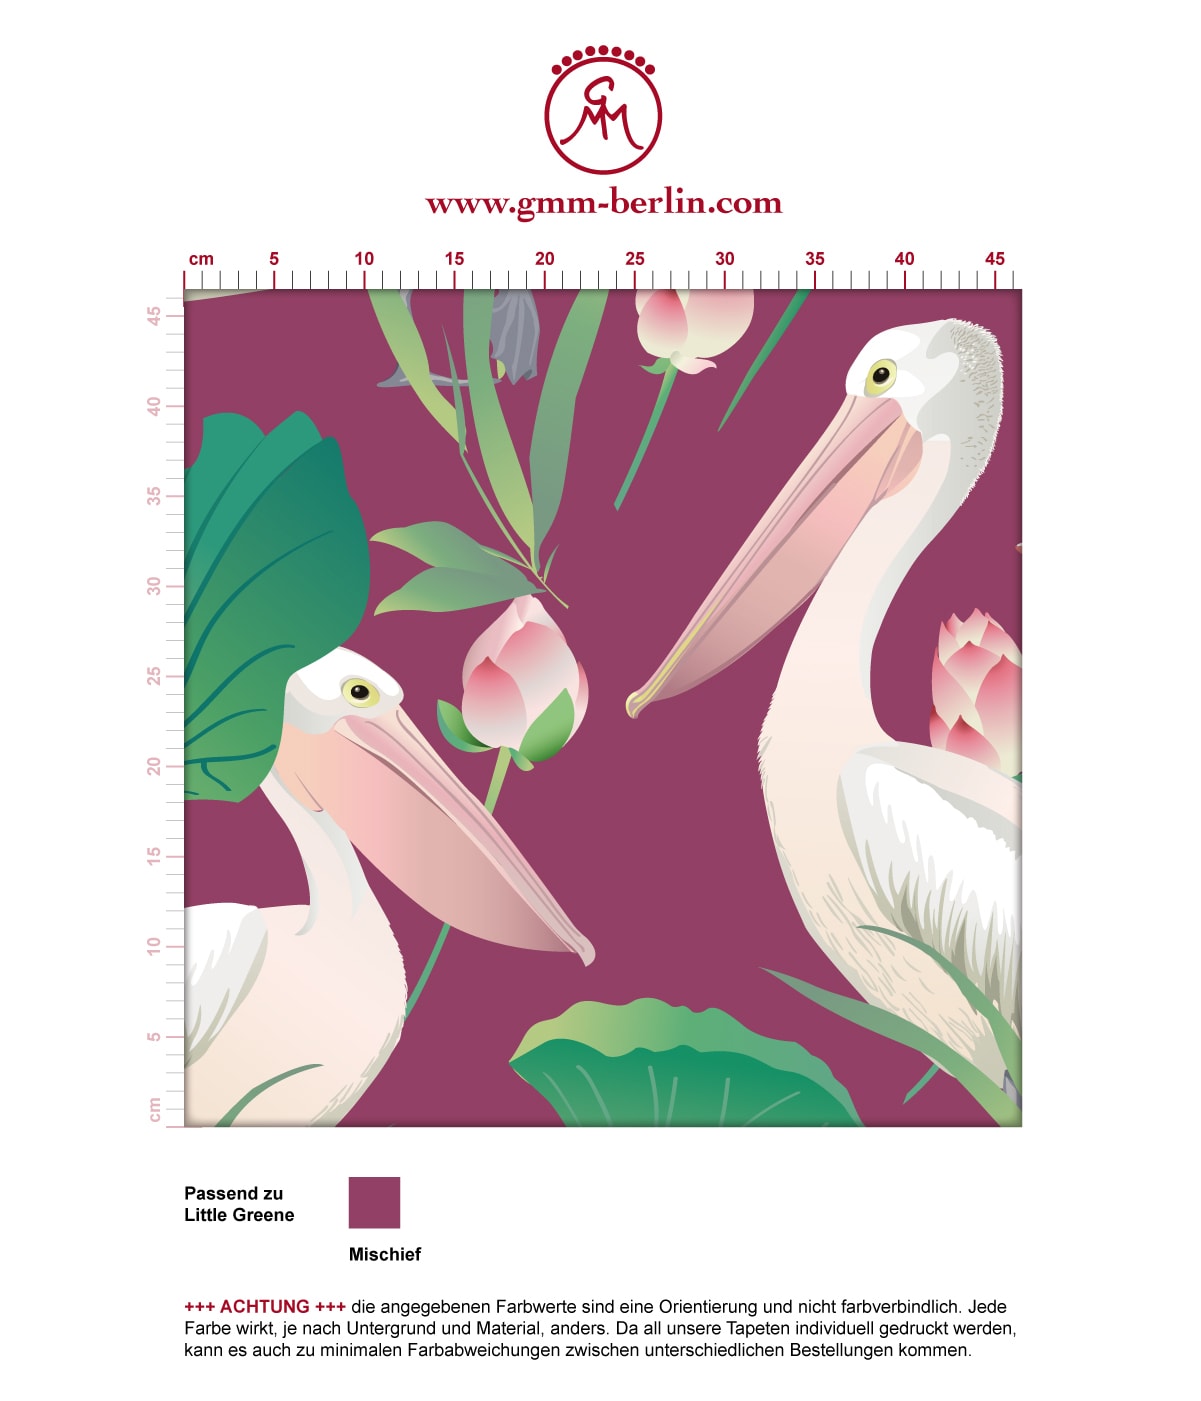 Lila Vogel Tapete "Pelican Pond" mit Pelikanen und Seerosen angepasst an Little Greene Wandfarben. Aus dem GMM-BERLIN.com Sortiment: Schöne Tapeten in der Farbe: violett